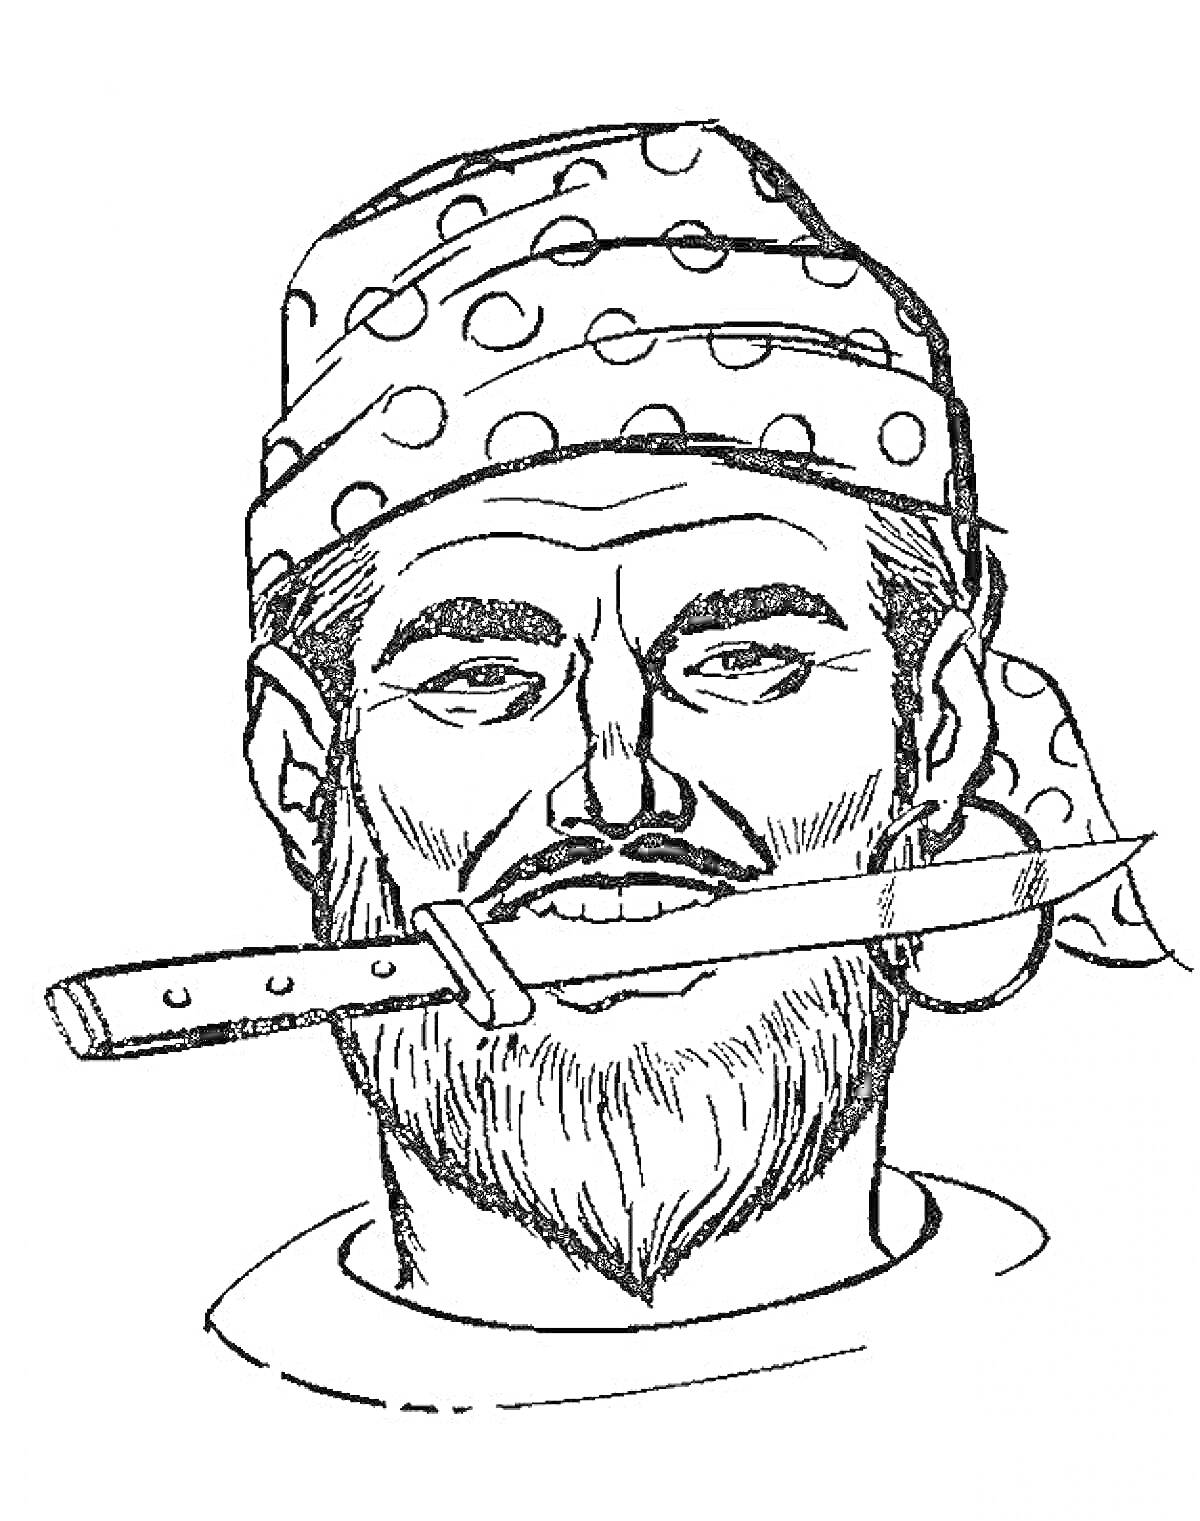 Раскраска Мужчина с бородой в бандане с узорами и серьгой в ухе, держащий нож во рту